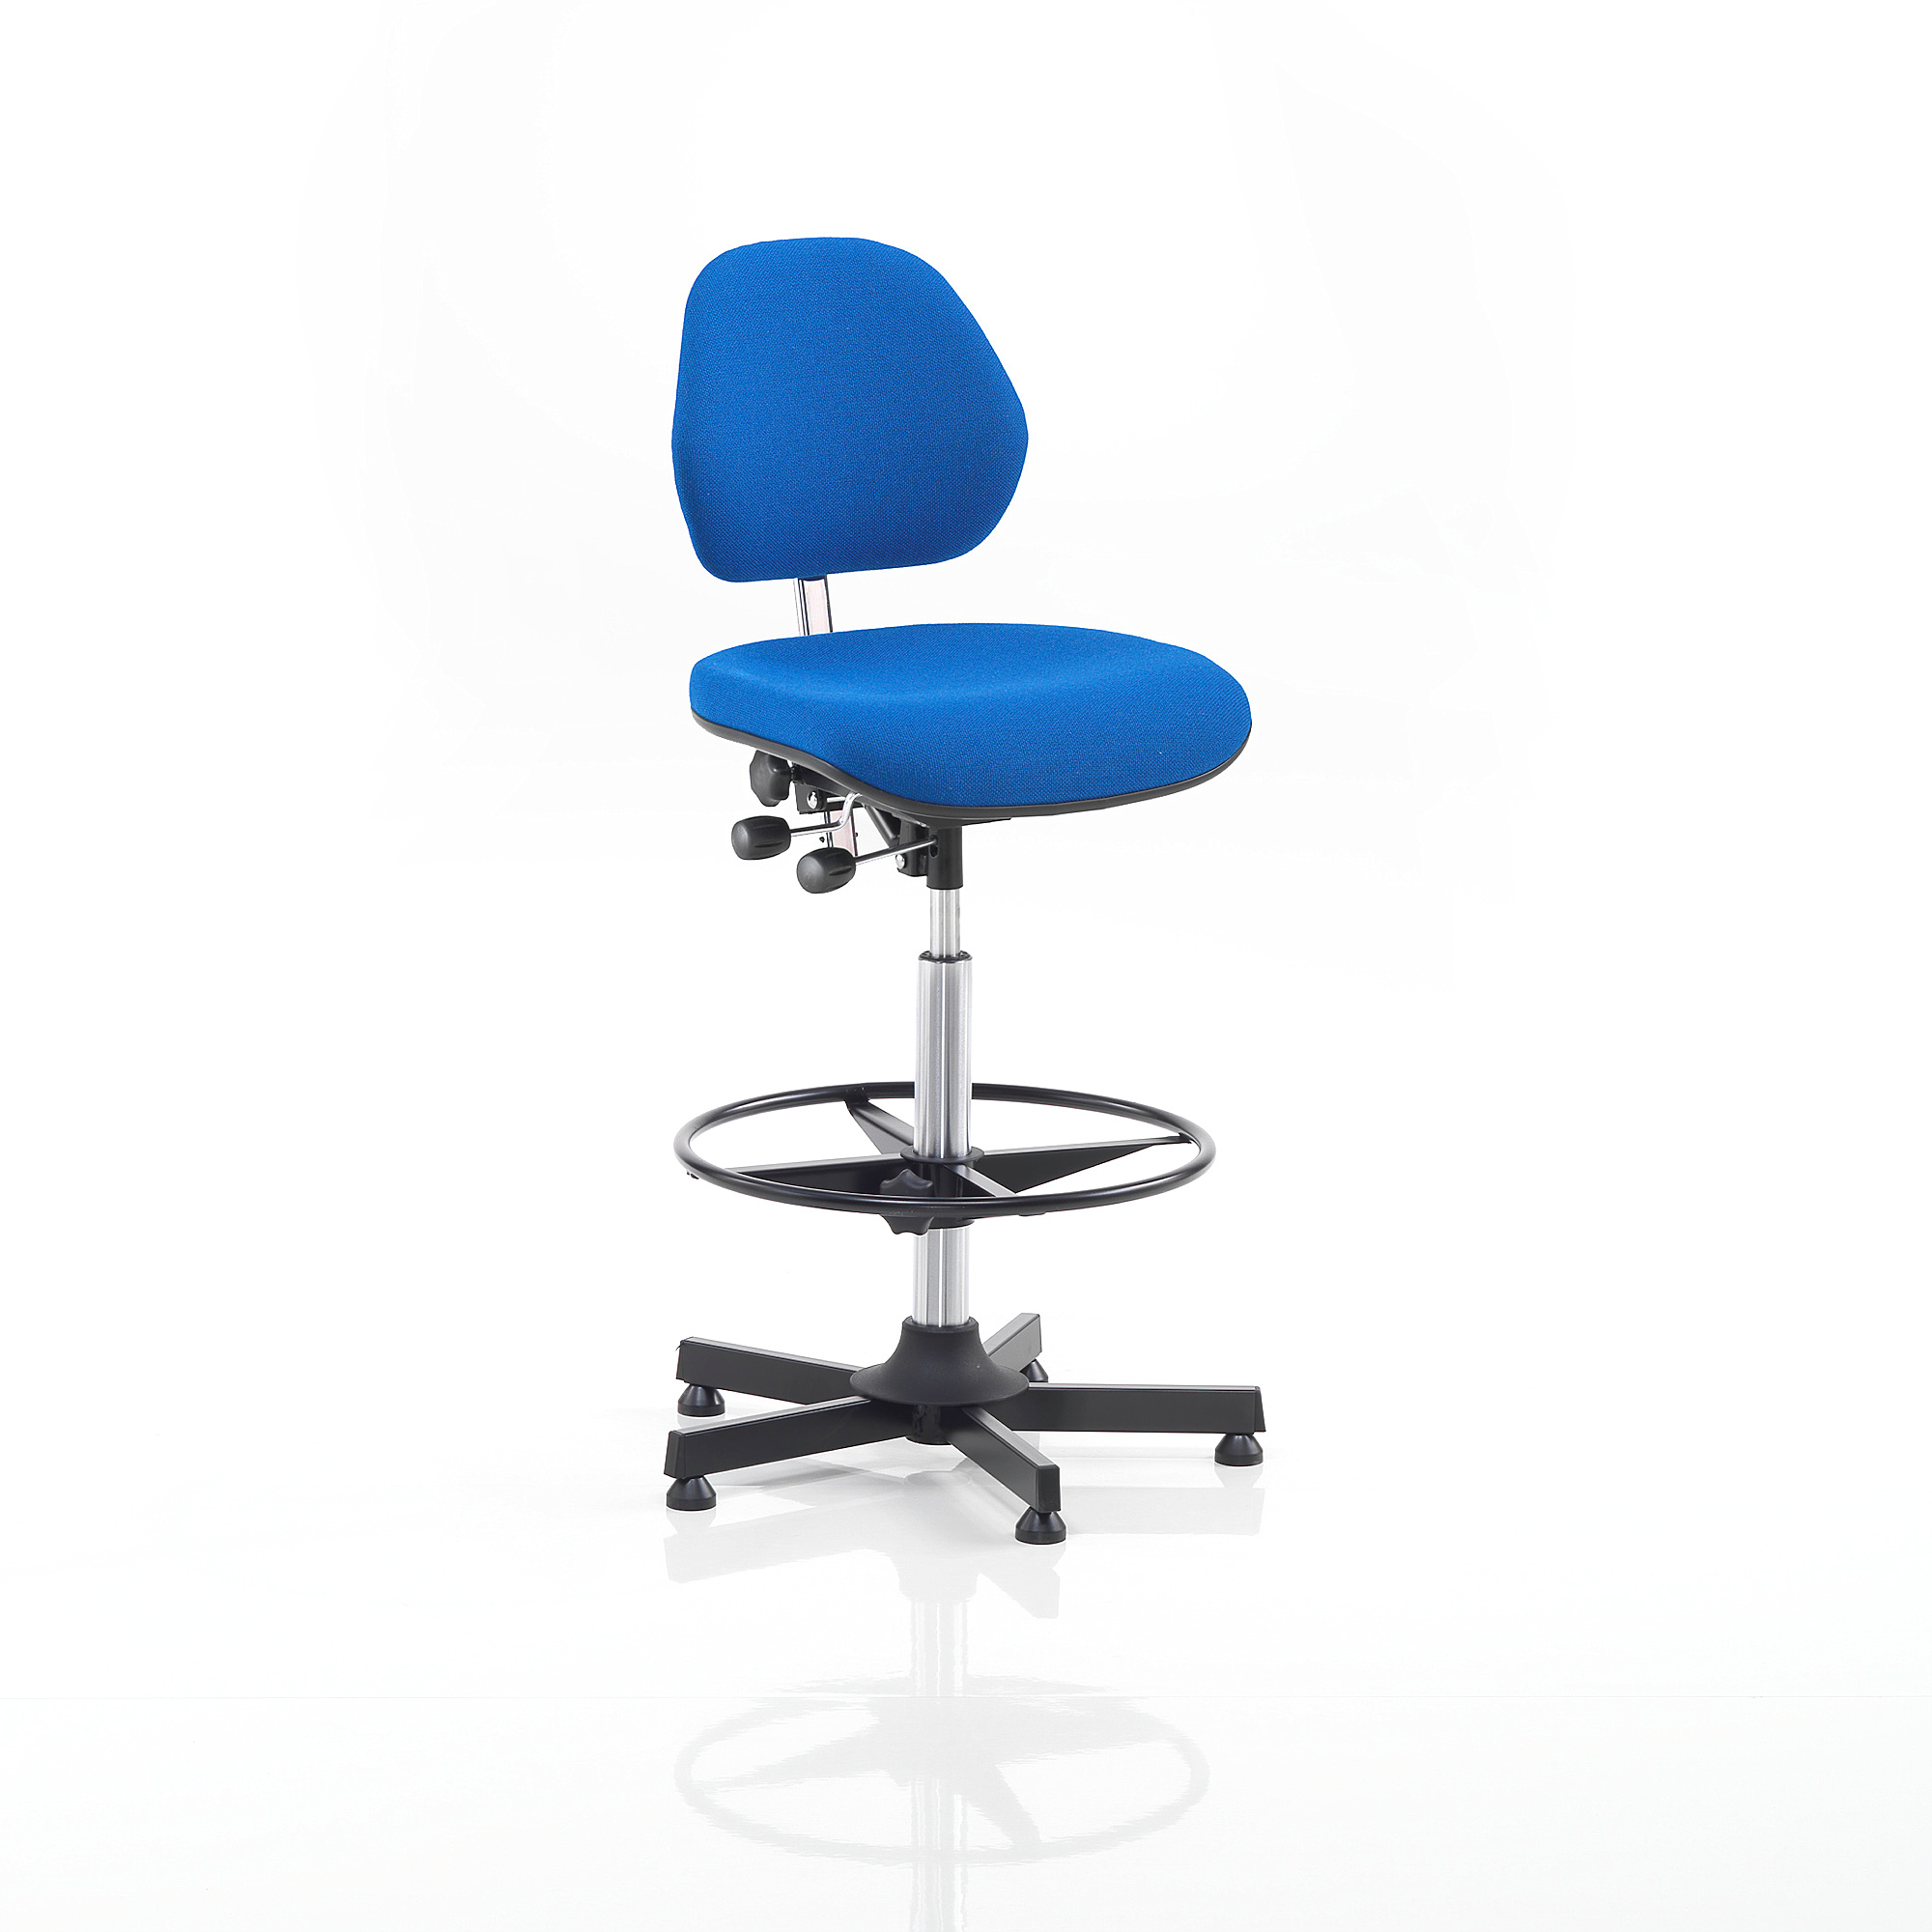 E-shop Pracovná dielenská stolička AUGUSTA, výška 650-900 mm, modrá